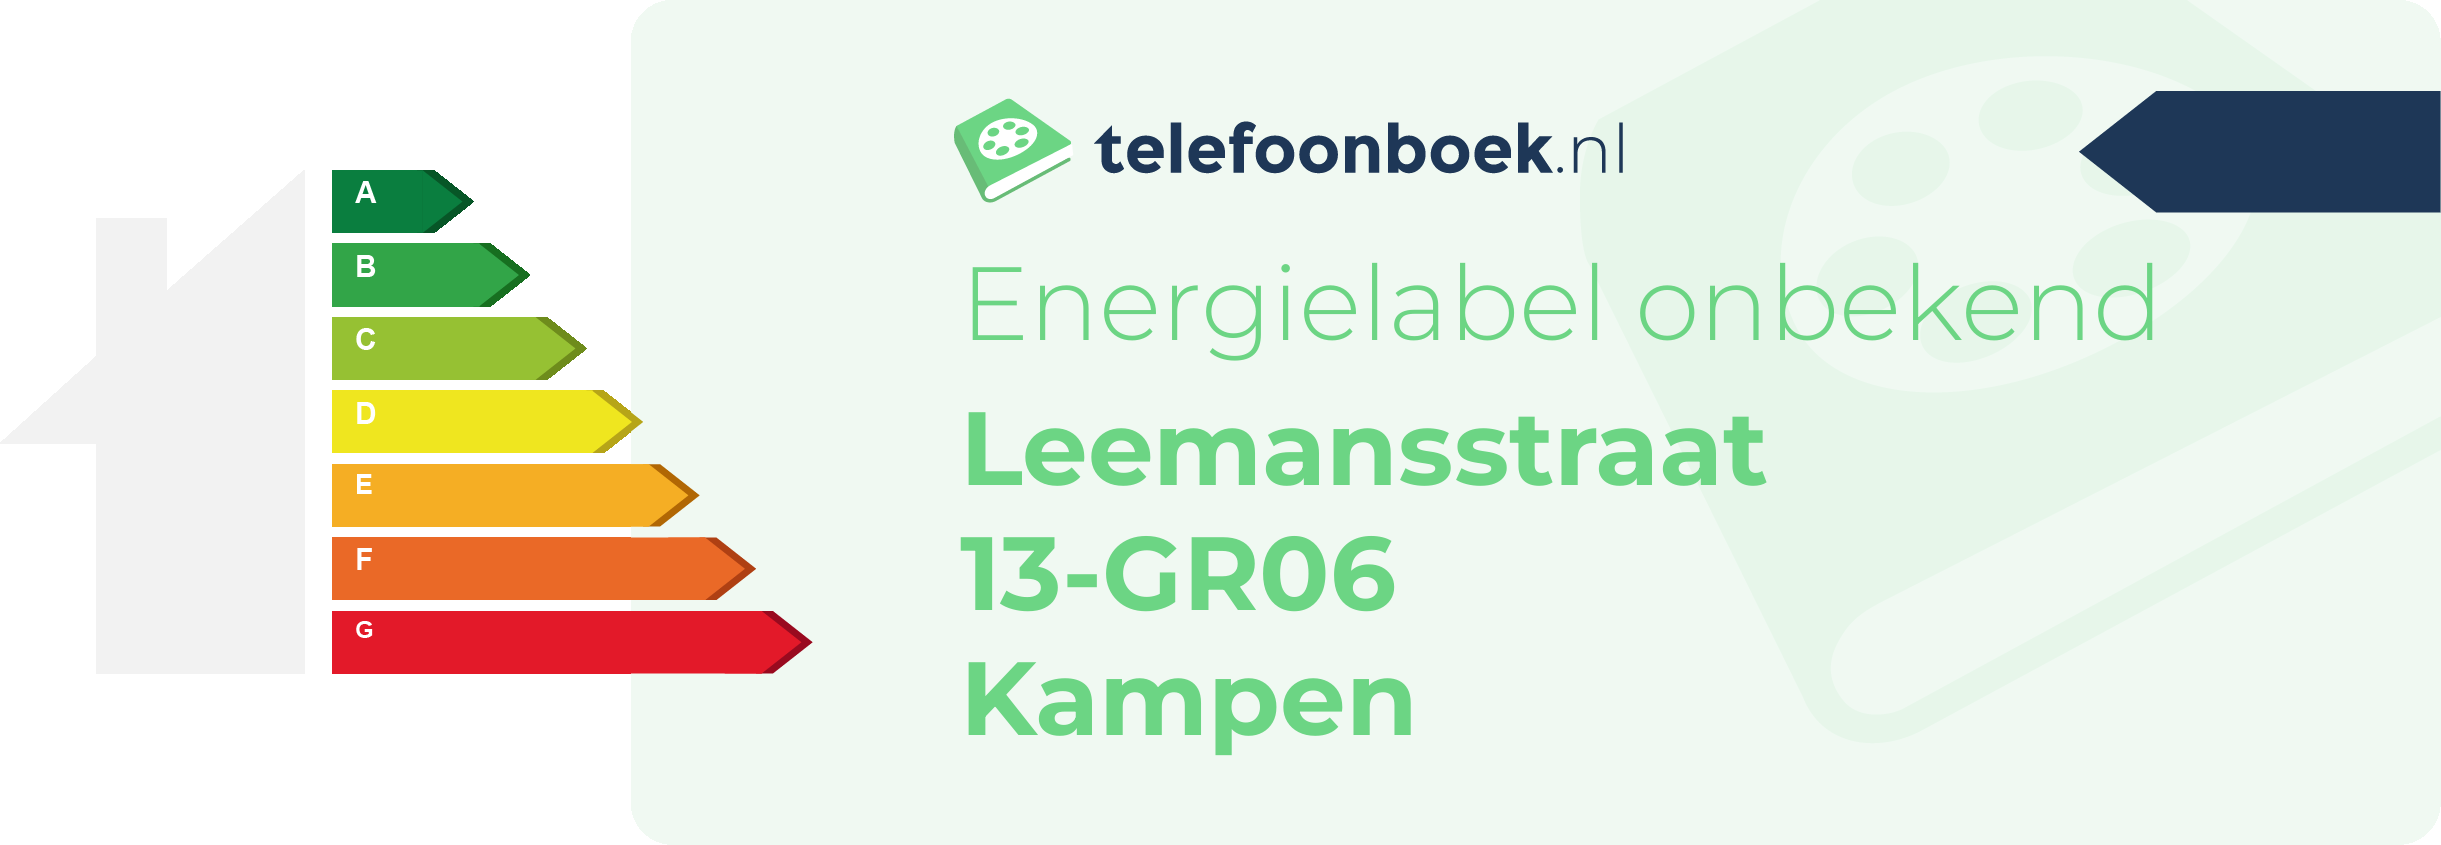 Energielabel Leemansstraat 13-GR06 Kampen